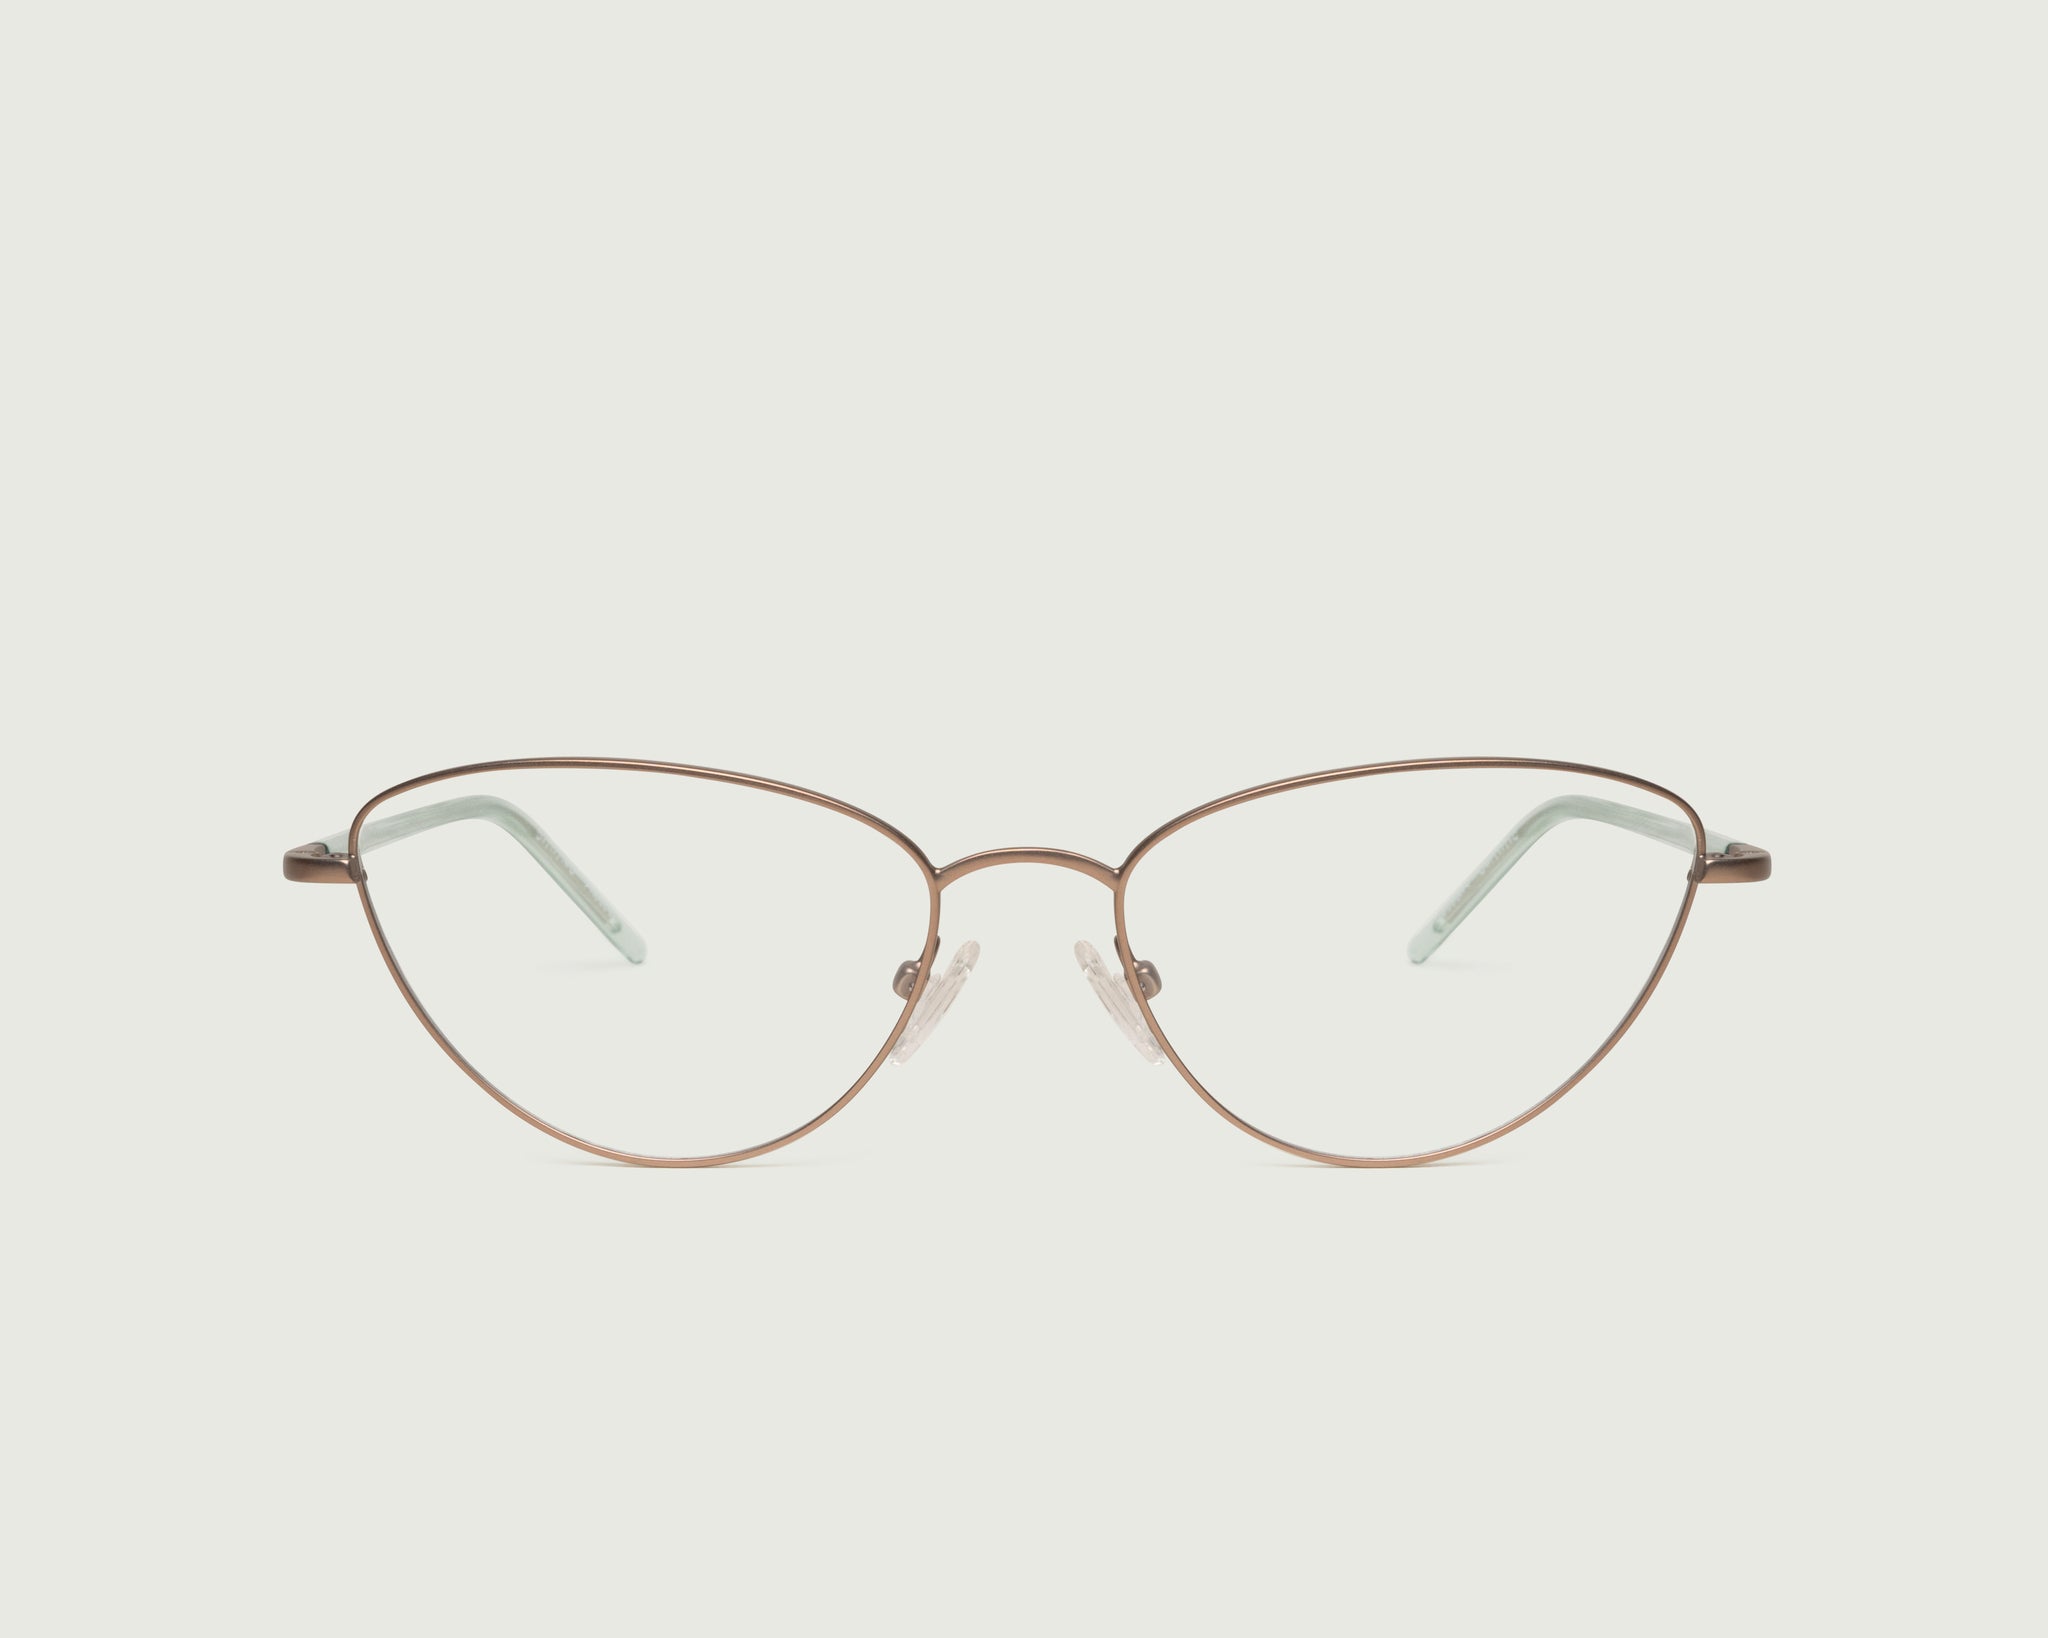 Tan::Phoebe Eyeglasses cateye brown metal front